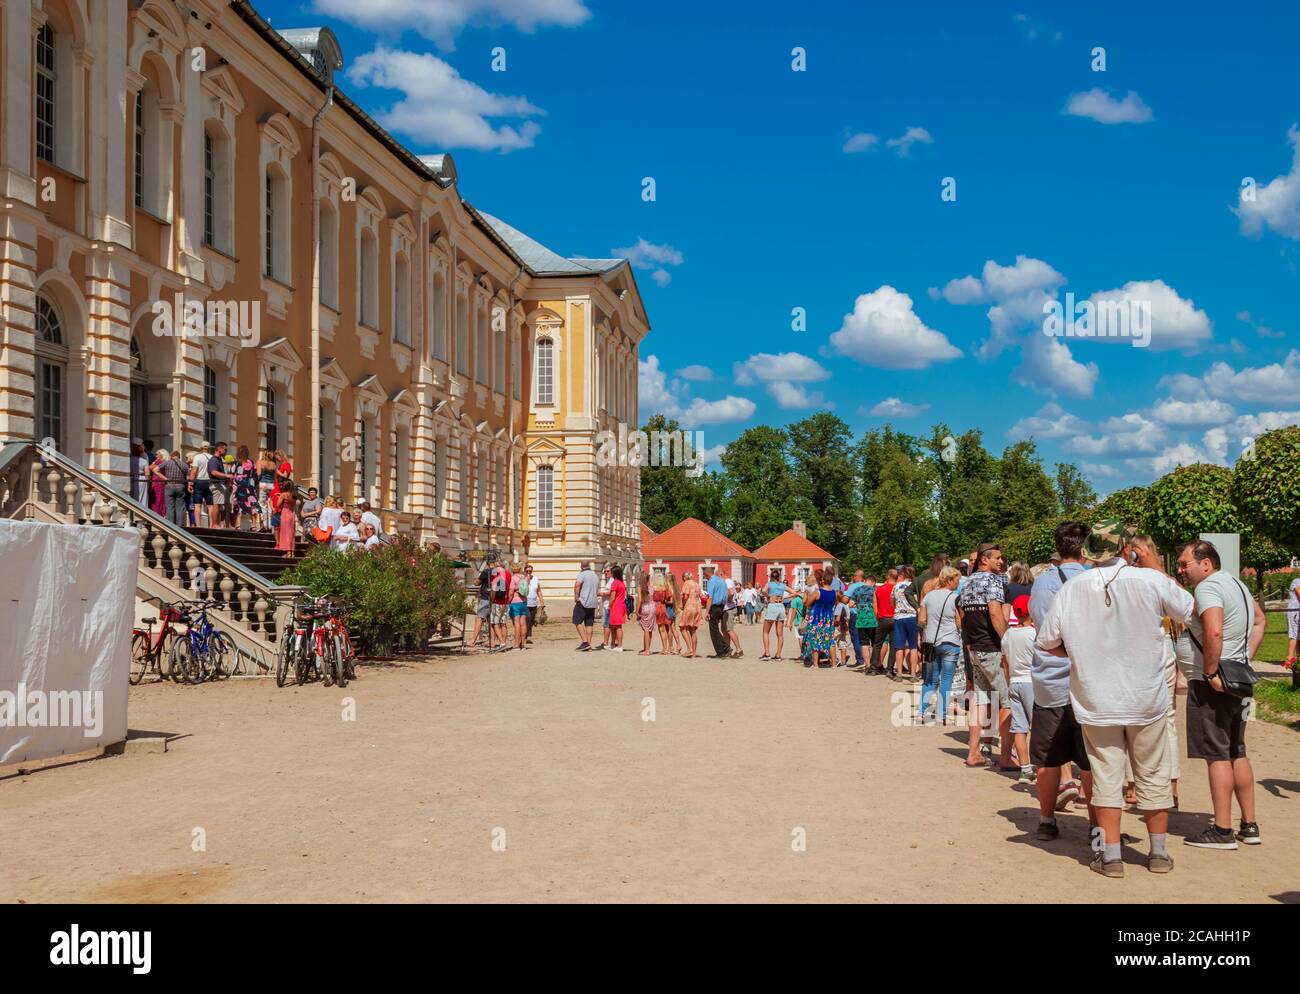 Los turistas hacen cola frente al Palacio Rundale, sin tener en cuenta las reglas de distanciamiento social. Foto de stock